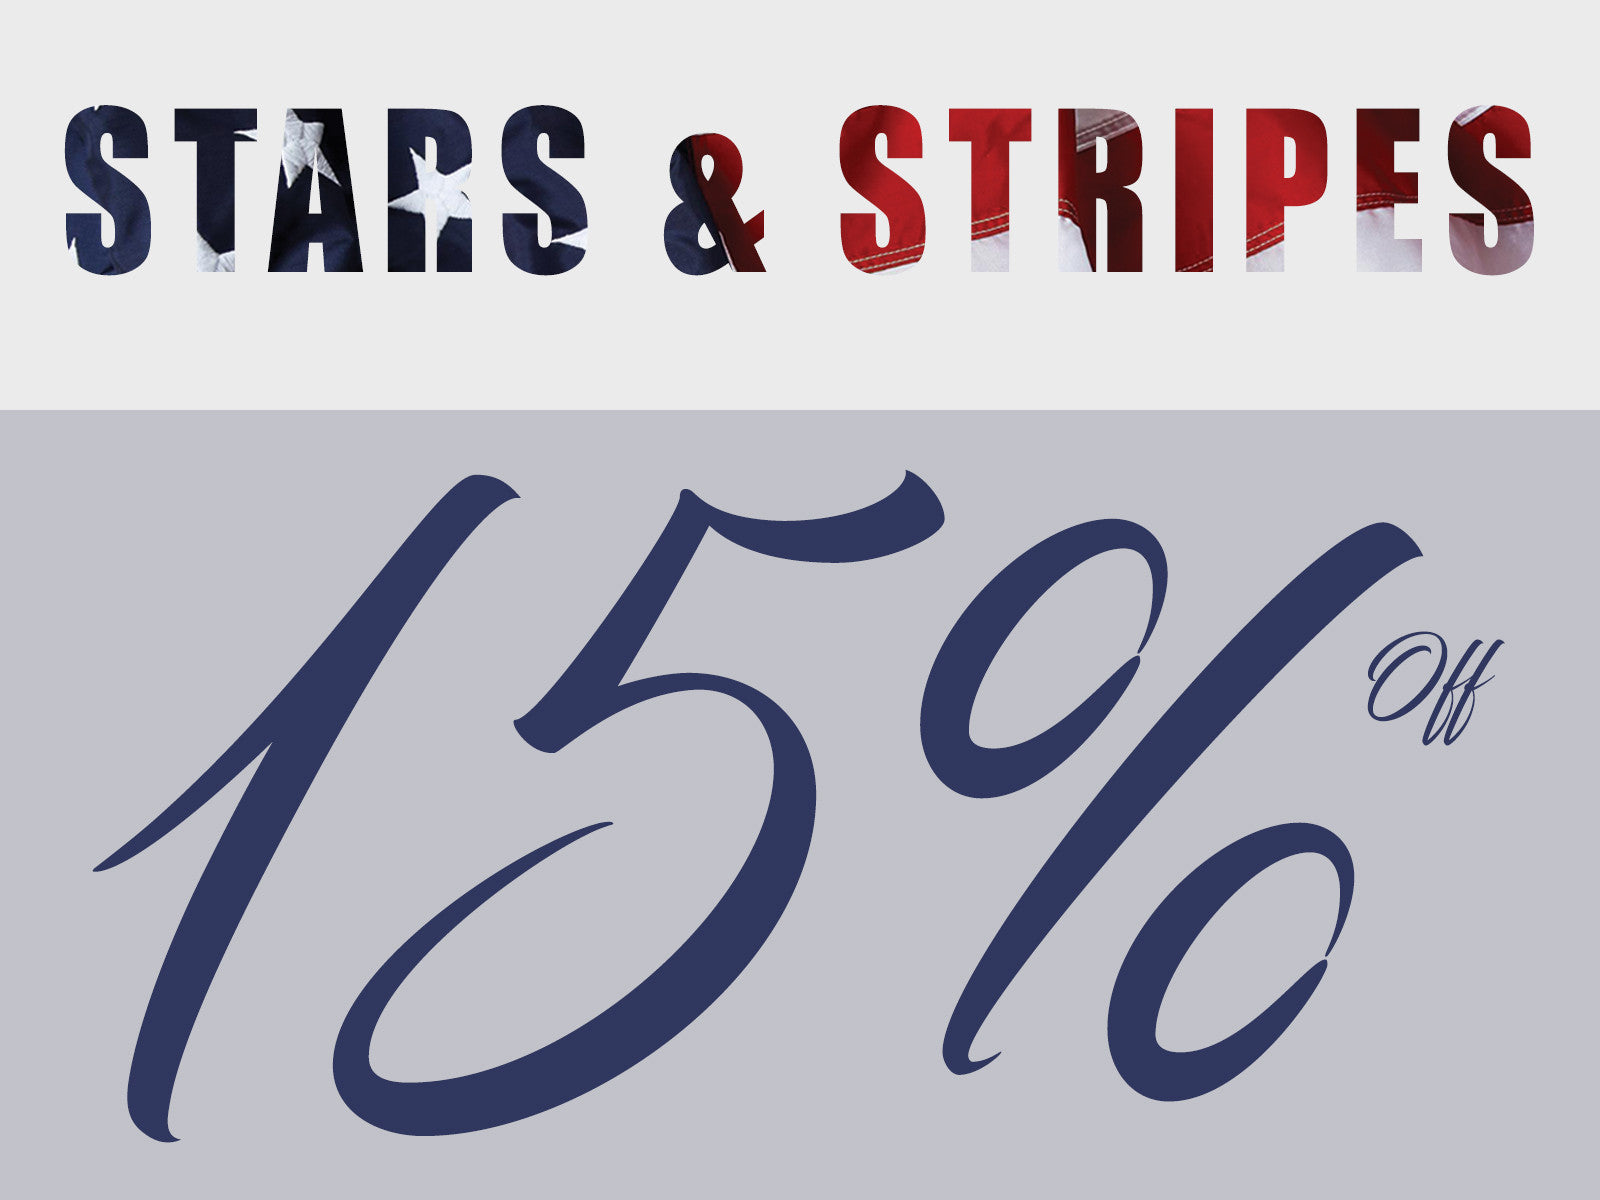 STARS & STRIPES: ENJOY 15% OFF